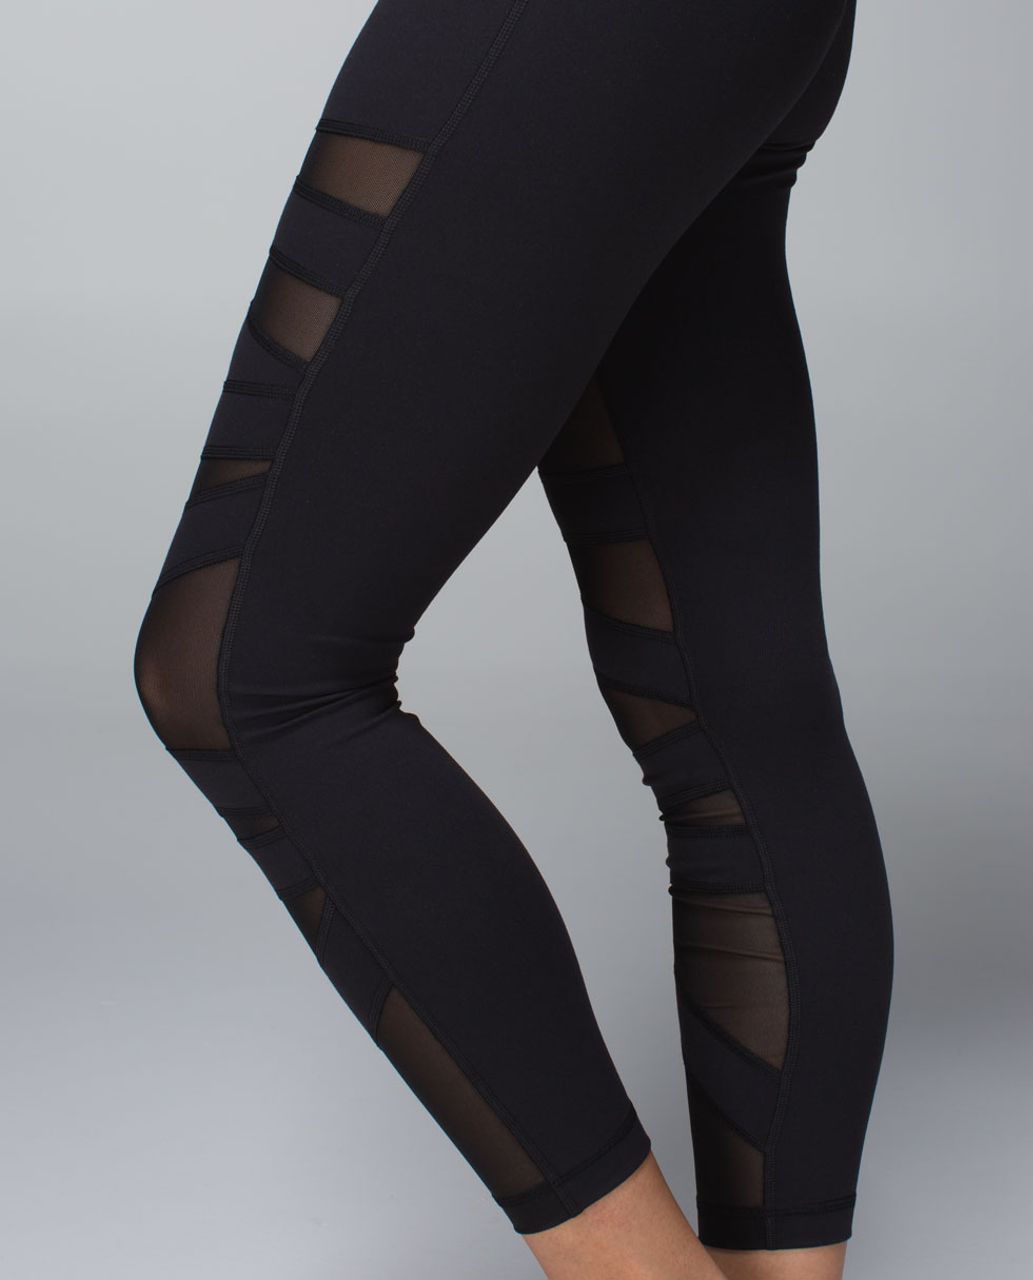 OU Buy & Sell  “Lululemon Black mesh design leggings size 6/8-$40